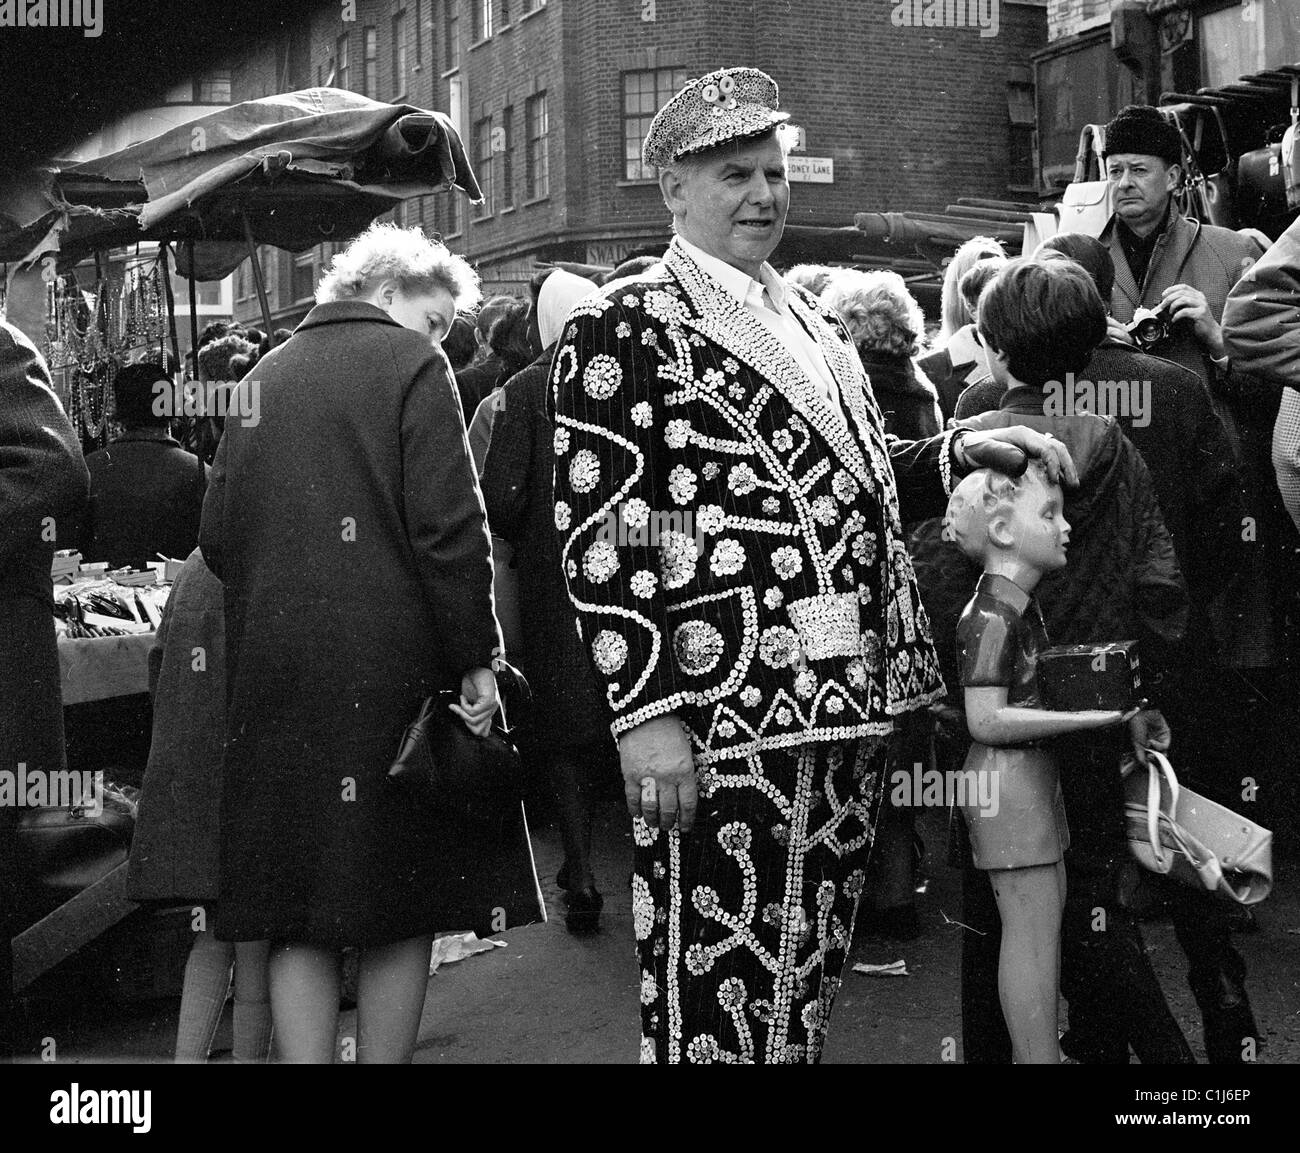 Années 1950, un roi nacré dans sa tenue décorée se tient dans un marché en plein air animé de l'East End avec sa main sur une boîte de charité Poor, Londres, Angleterre, Royaume-Uni. Banque D'Images